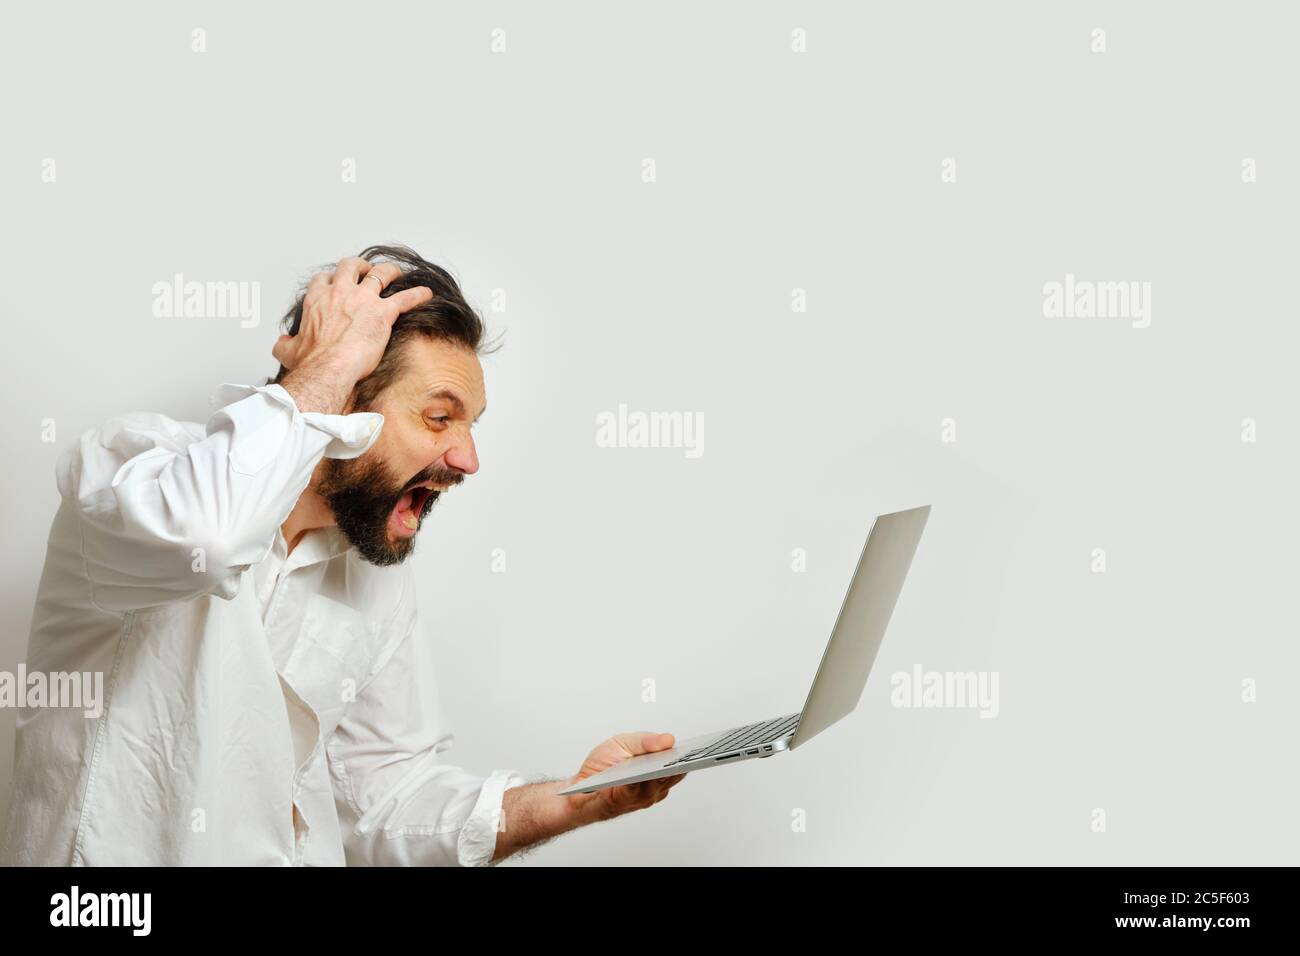 Mann hält sich den Kopf fest und blickt verzweifelt auf einen Laptop-Monitor, der auf weißem Hintergrund isoliert ist. Das Konzept der Emotionen und Finanzkrise. Stockfoto